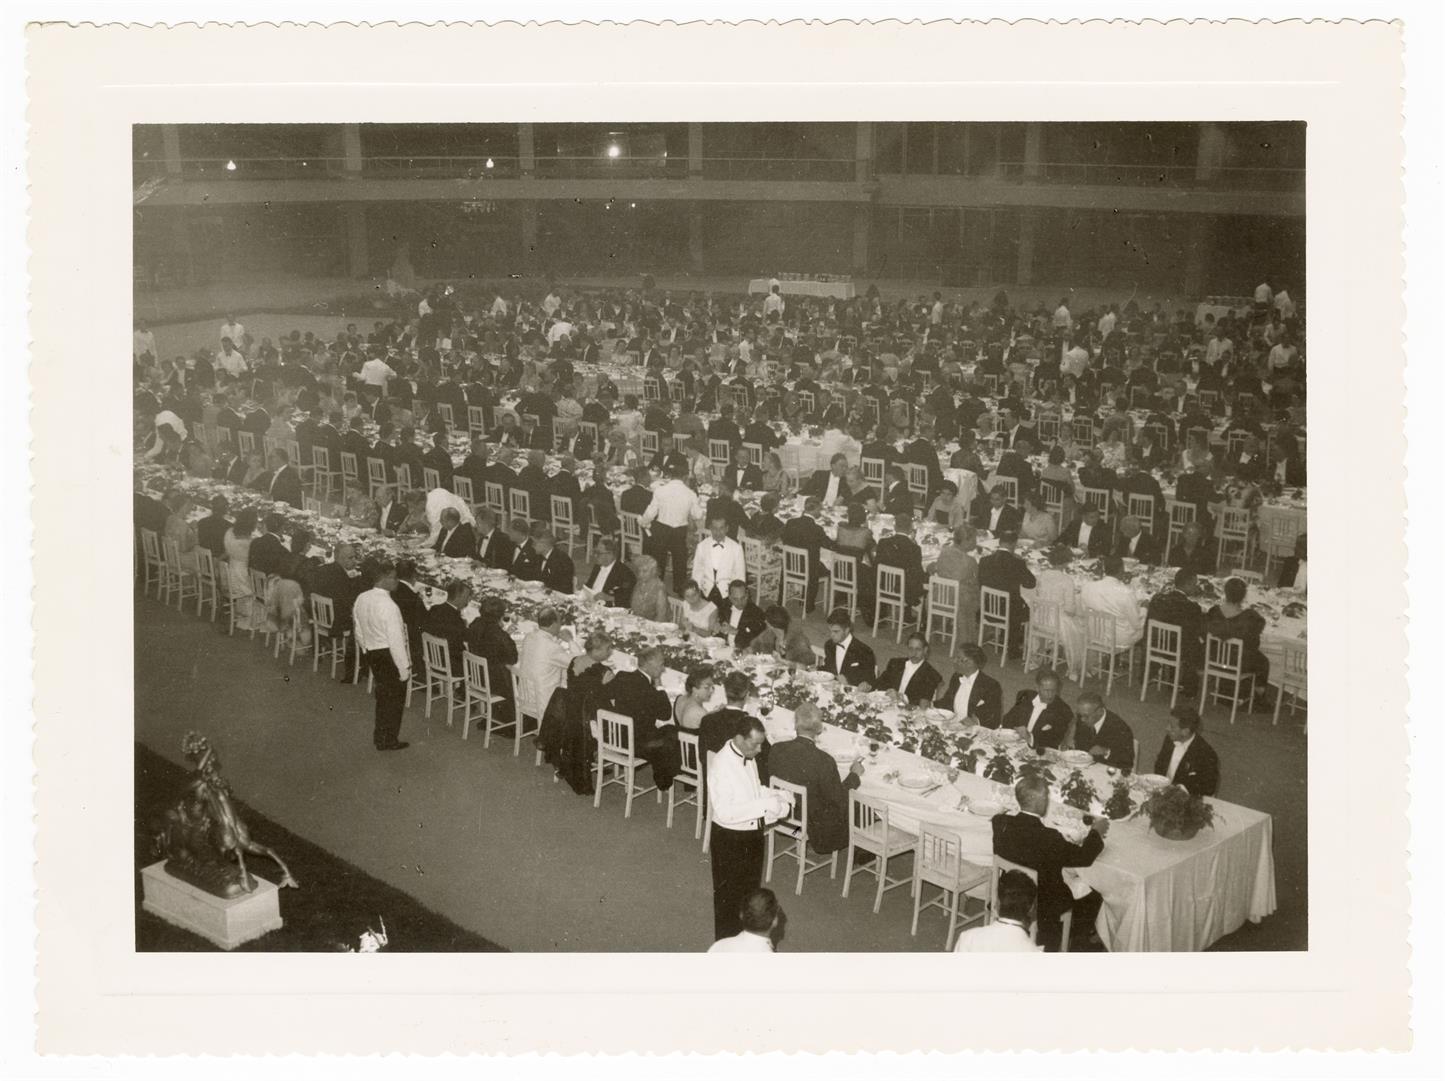 V Congresso Internacional de Pontes e Estruturas : banquete no Palácio de Cristal